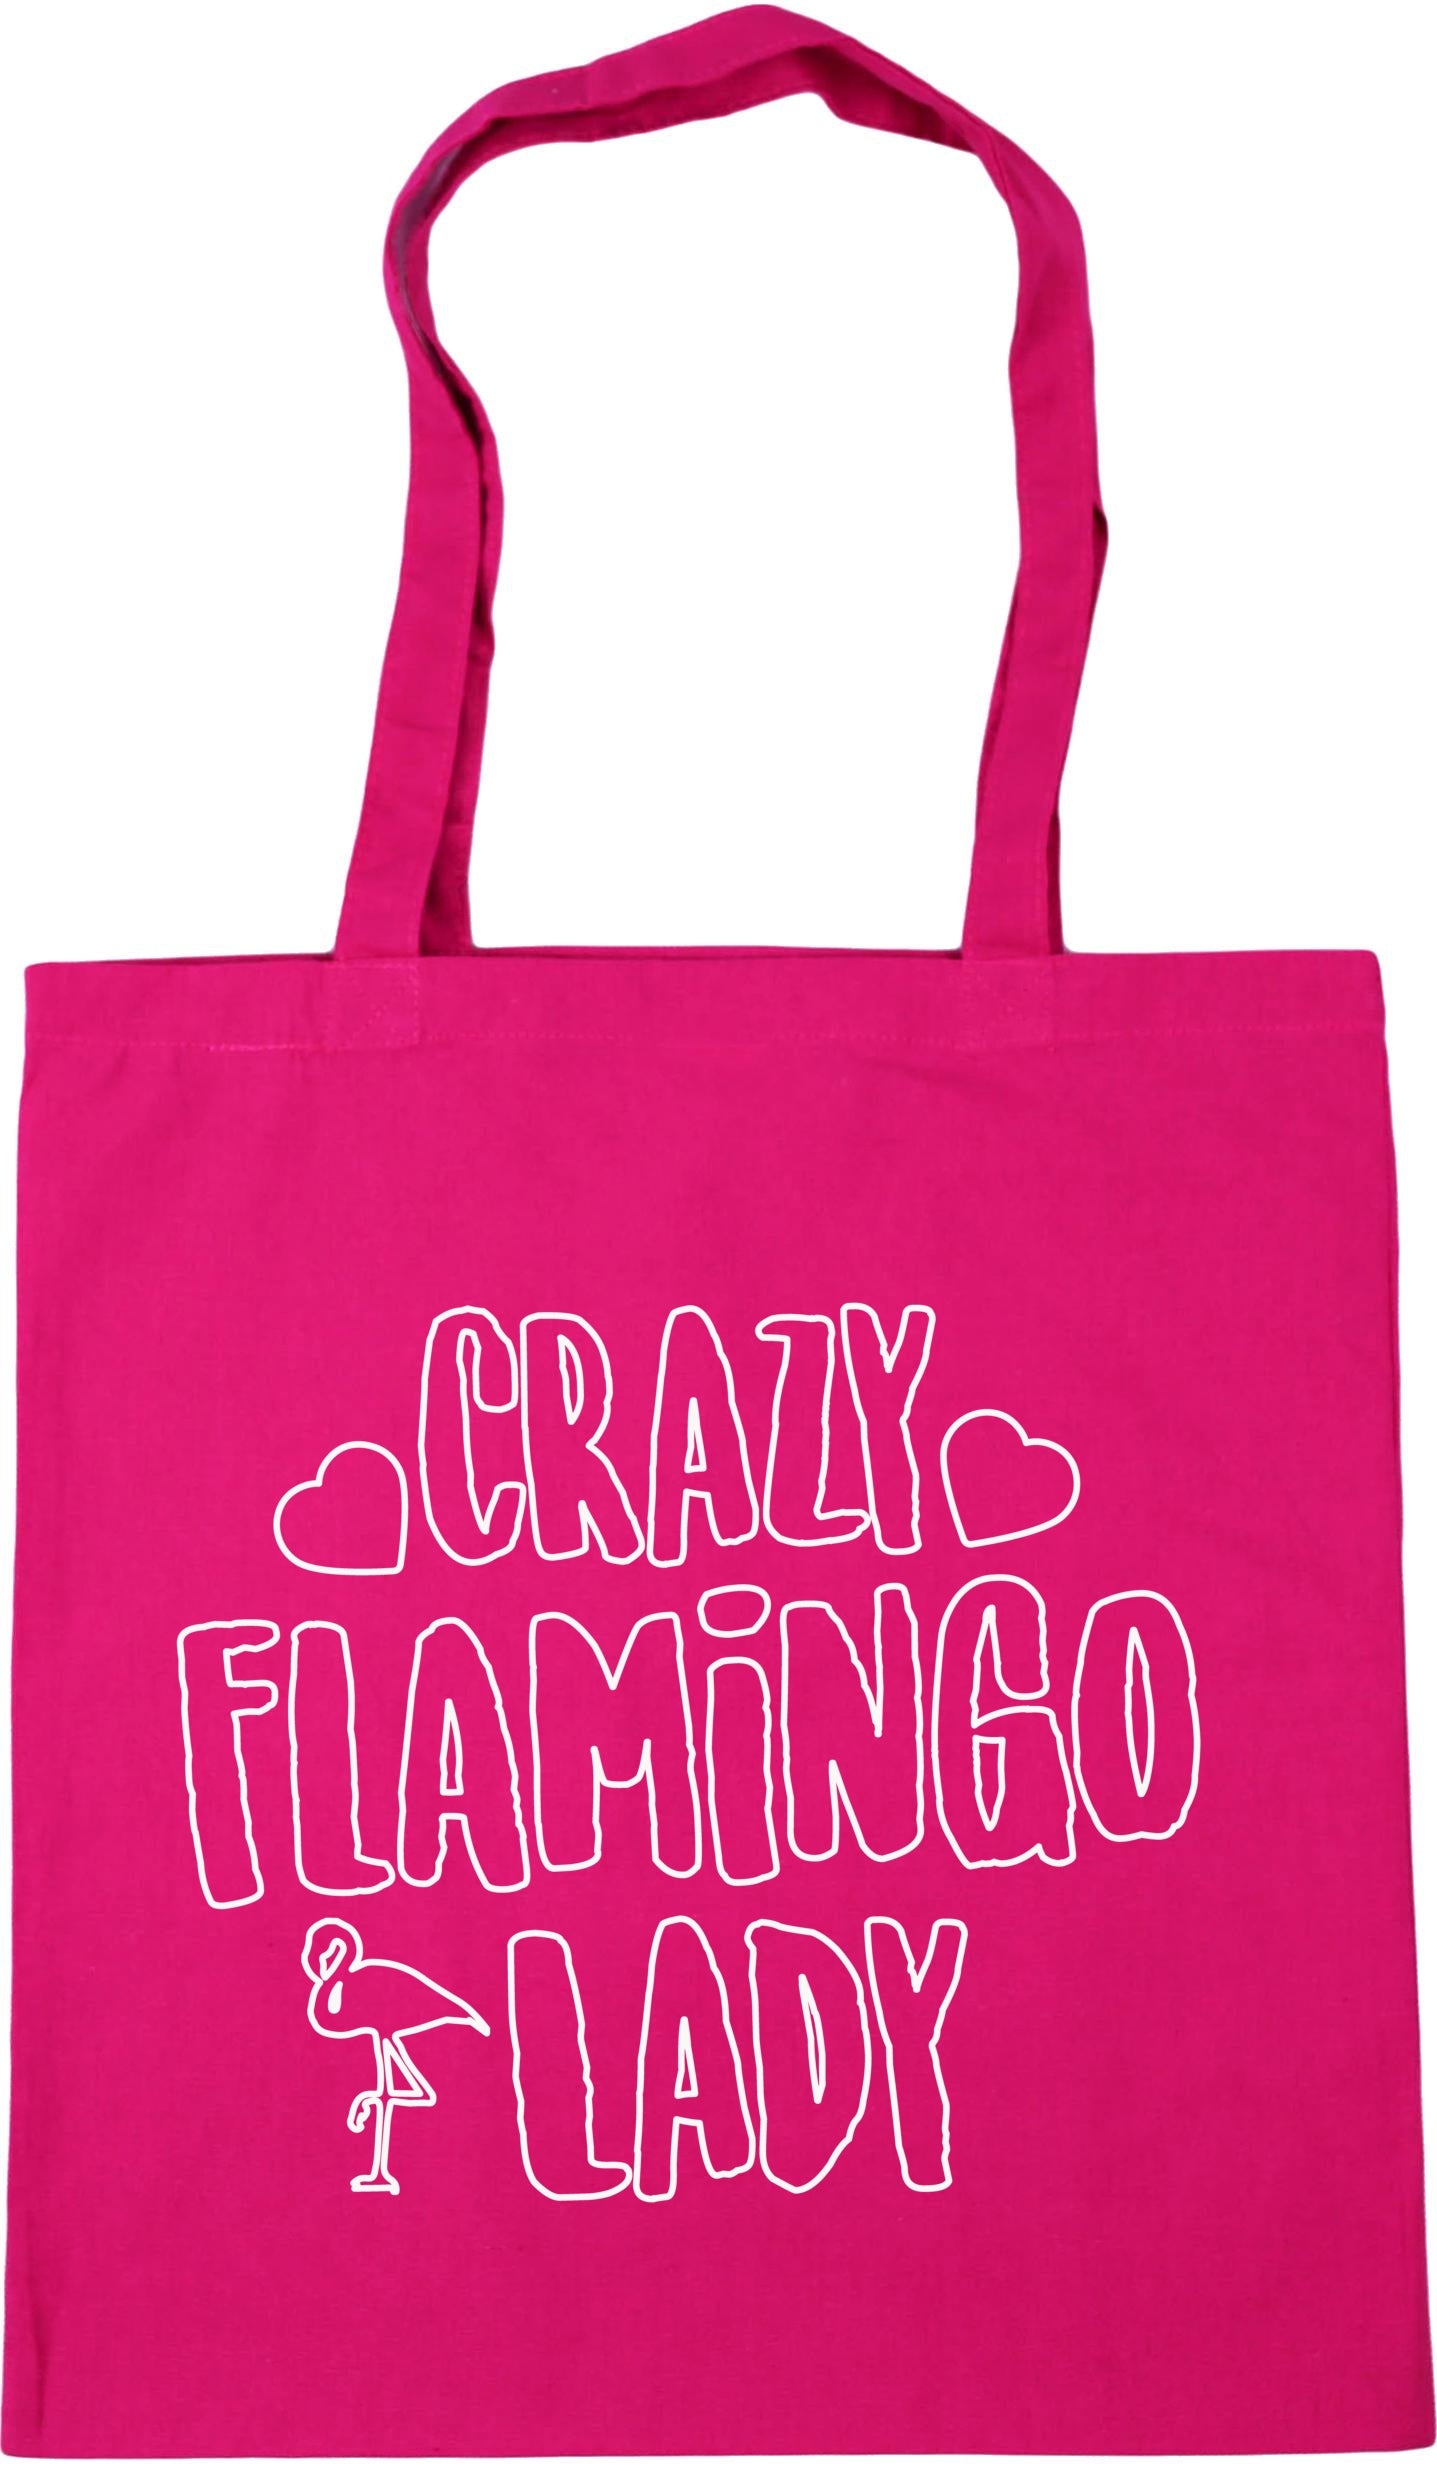 Crazy flamingo lady Tote Bag